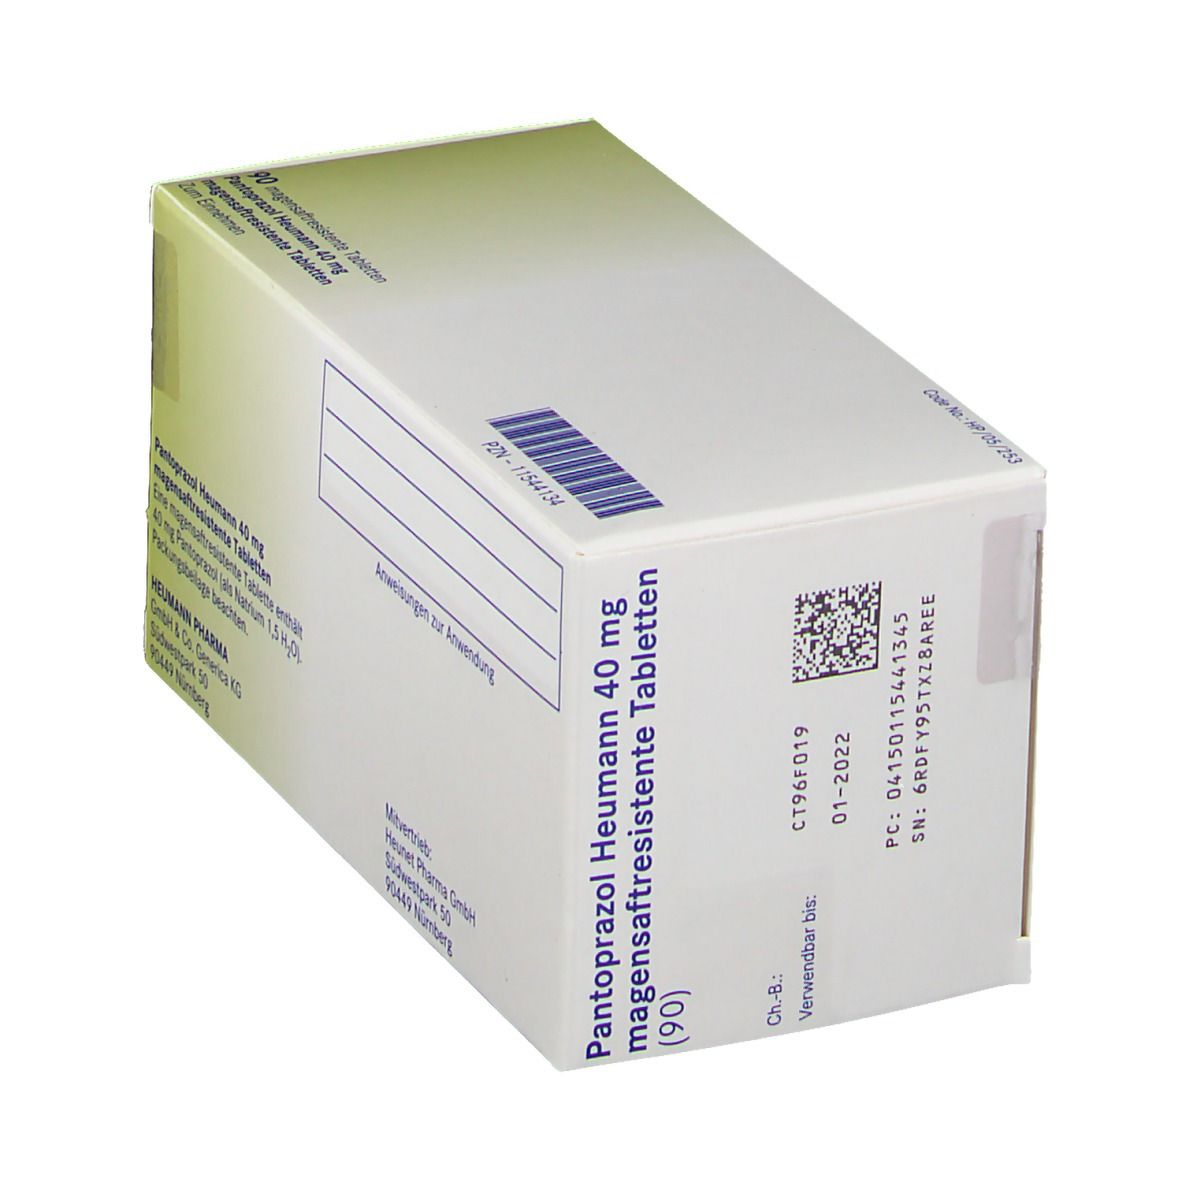 Pantoprazol Heumann 40 mg